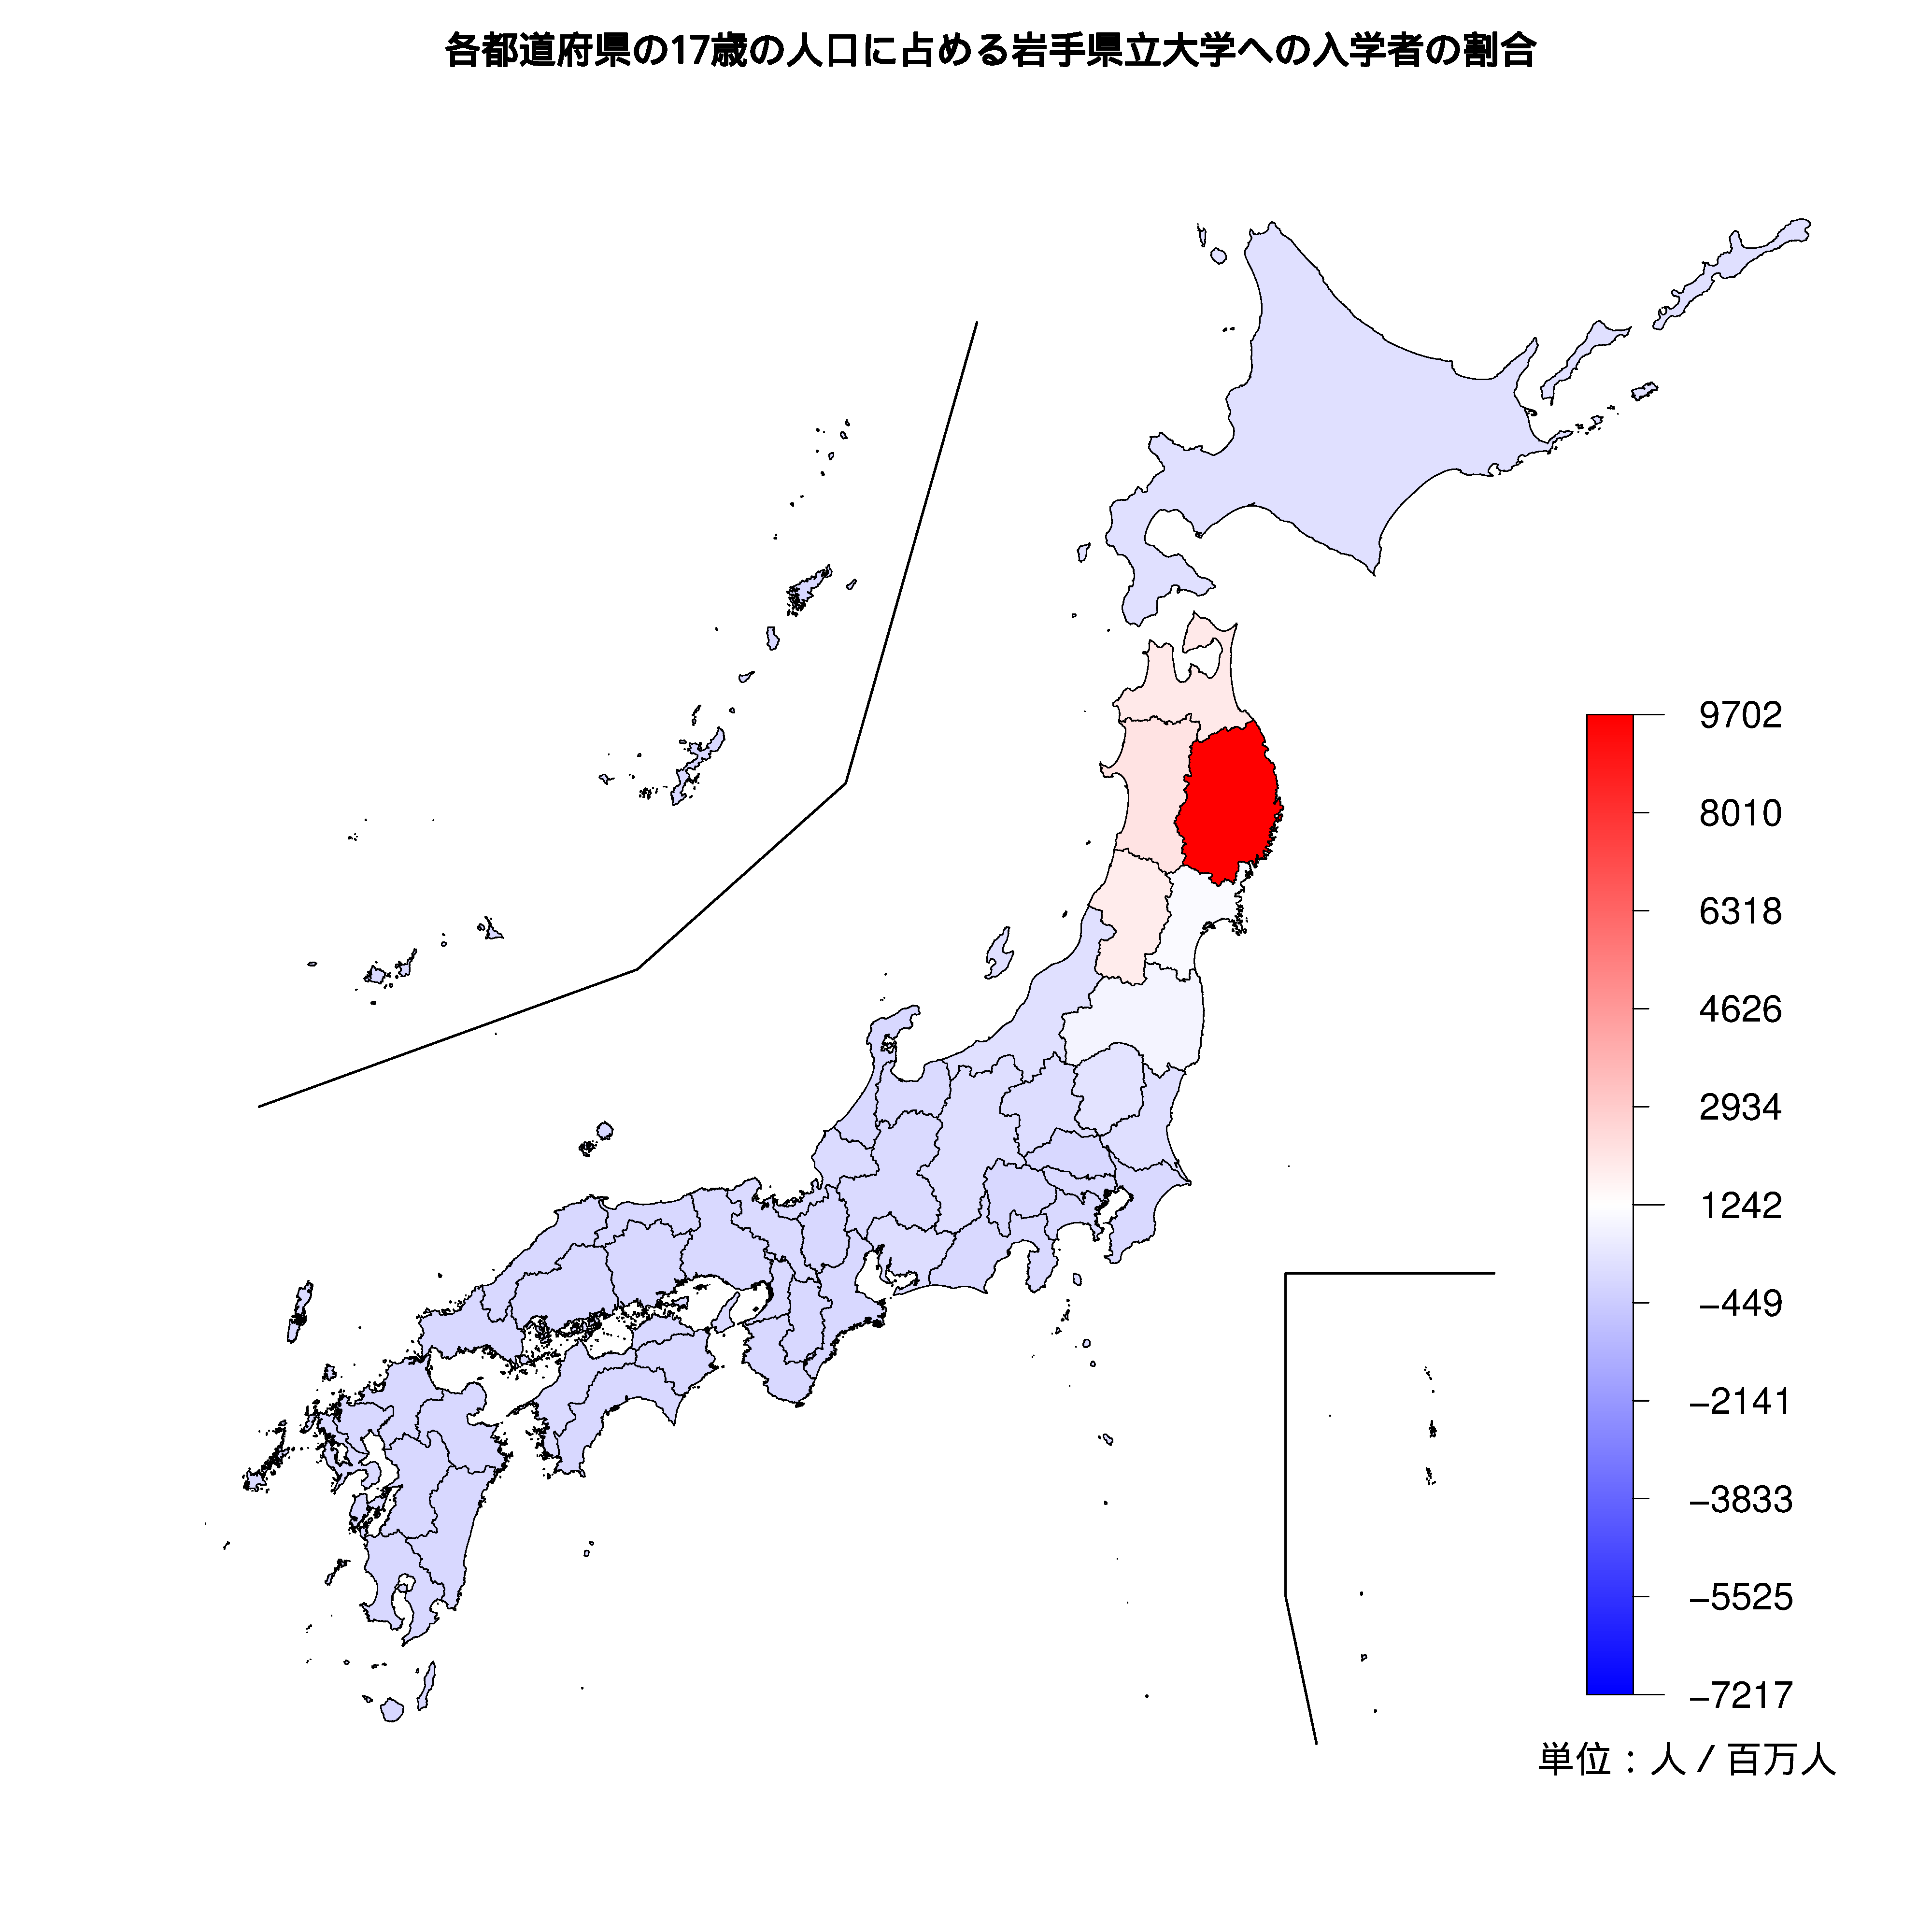 岩手県立大学への入学者が多い都道府県の色分け地図